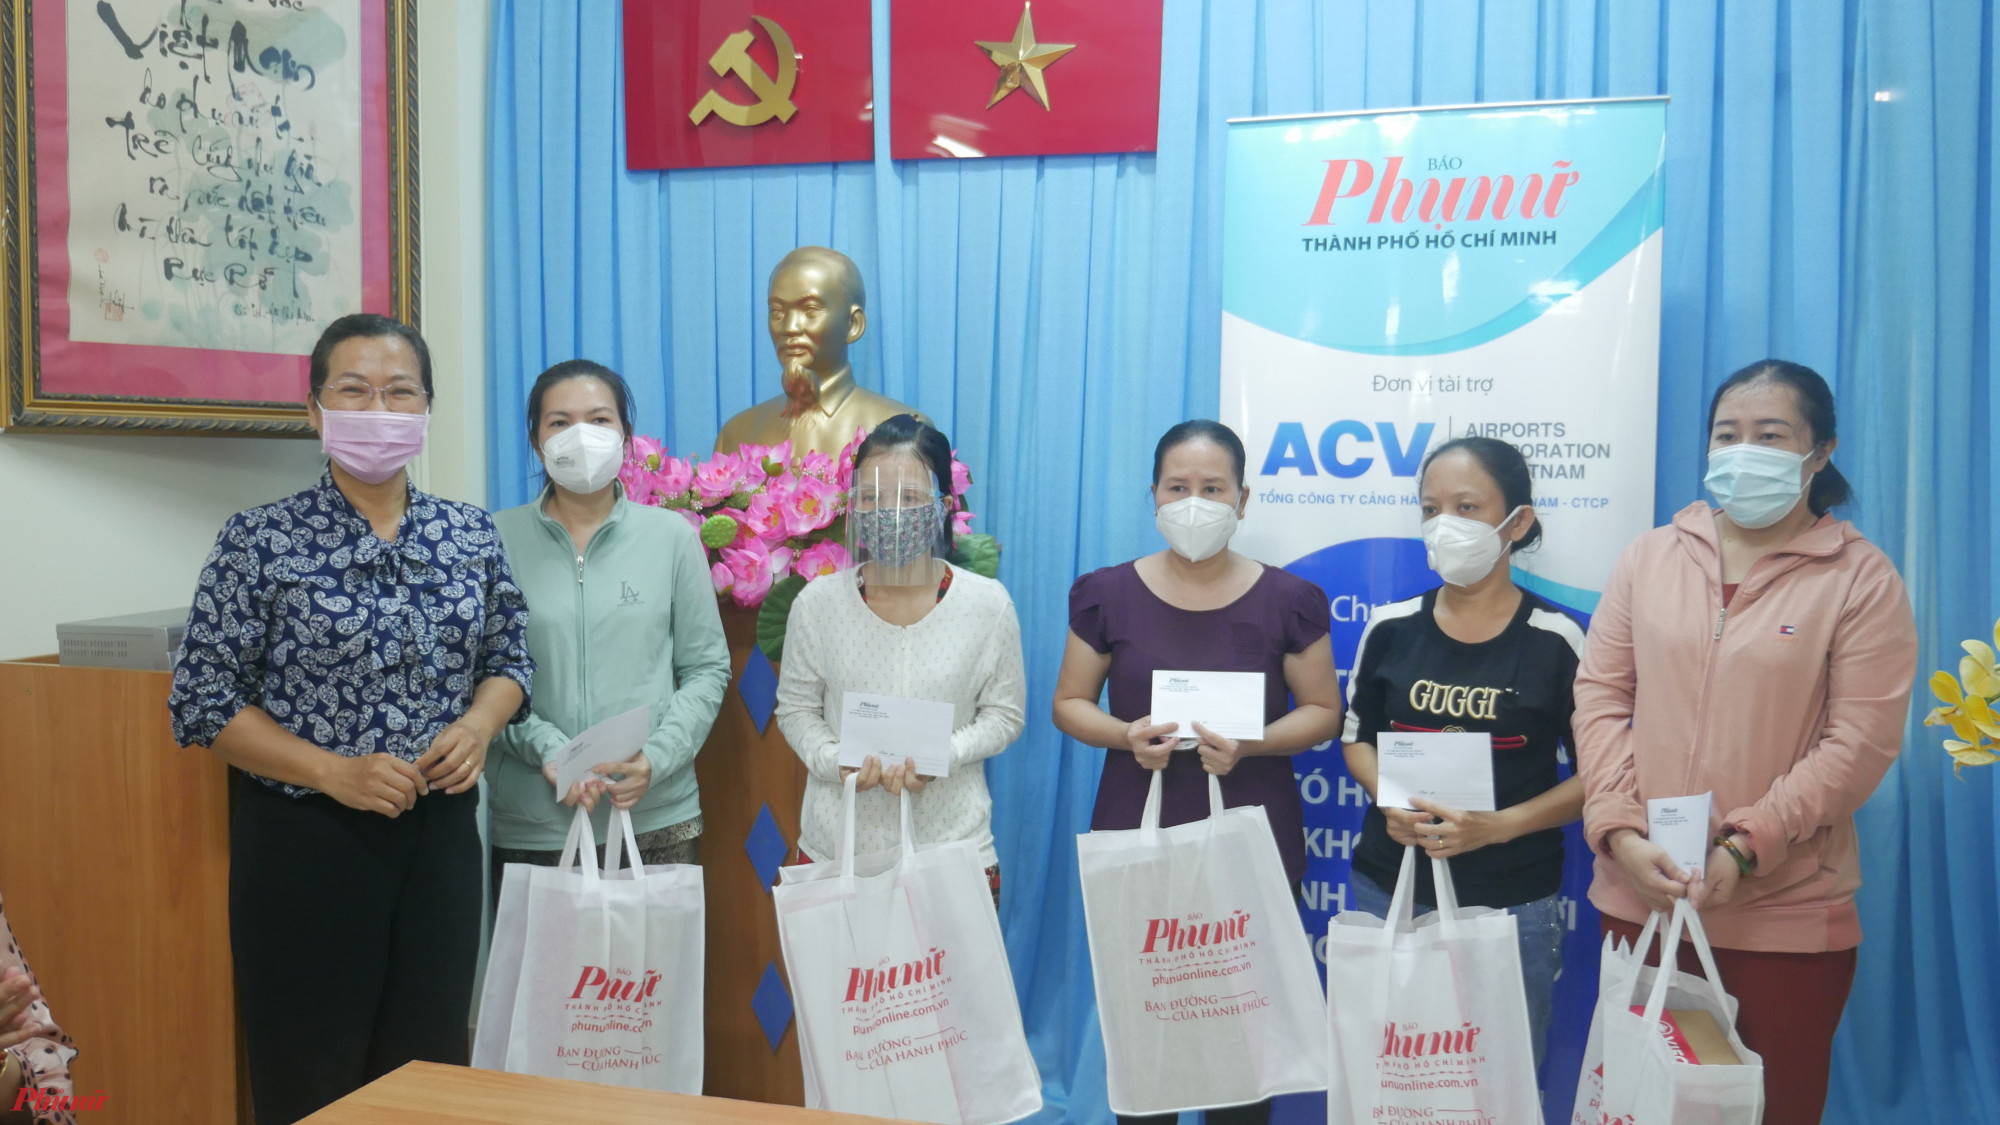 25 hội viên phụ nữ khó khăn tai quận Phú Nhuận vừa được nhận những phần quà hỗ trợ từ Báo Phụ nữ và Tổng công ty Cảng hàng không Việt Nam